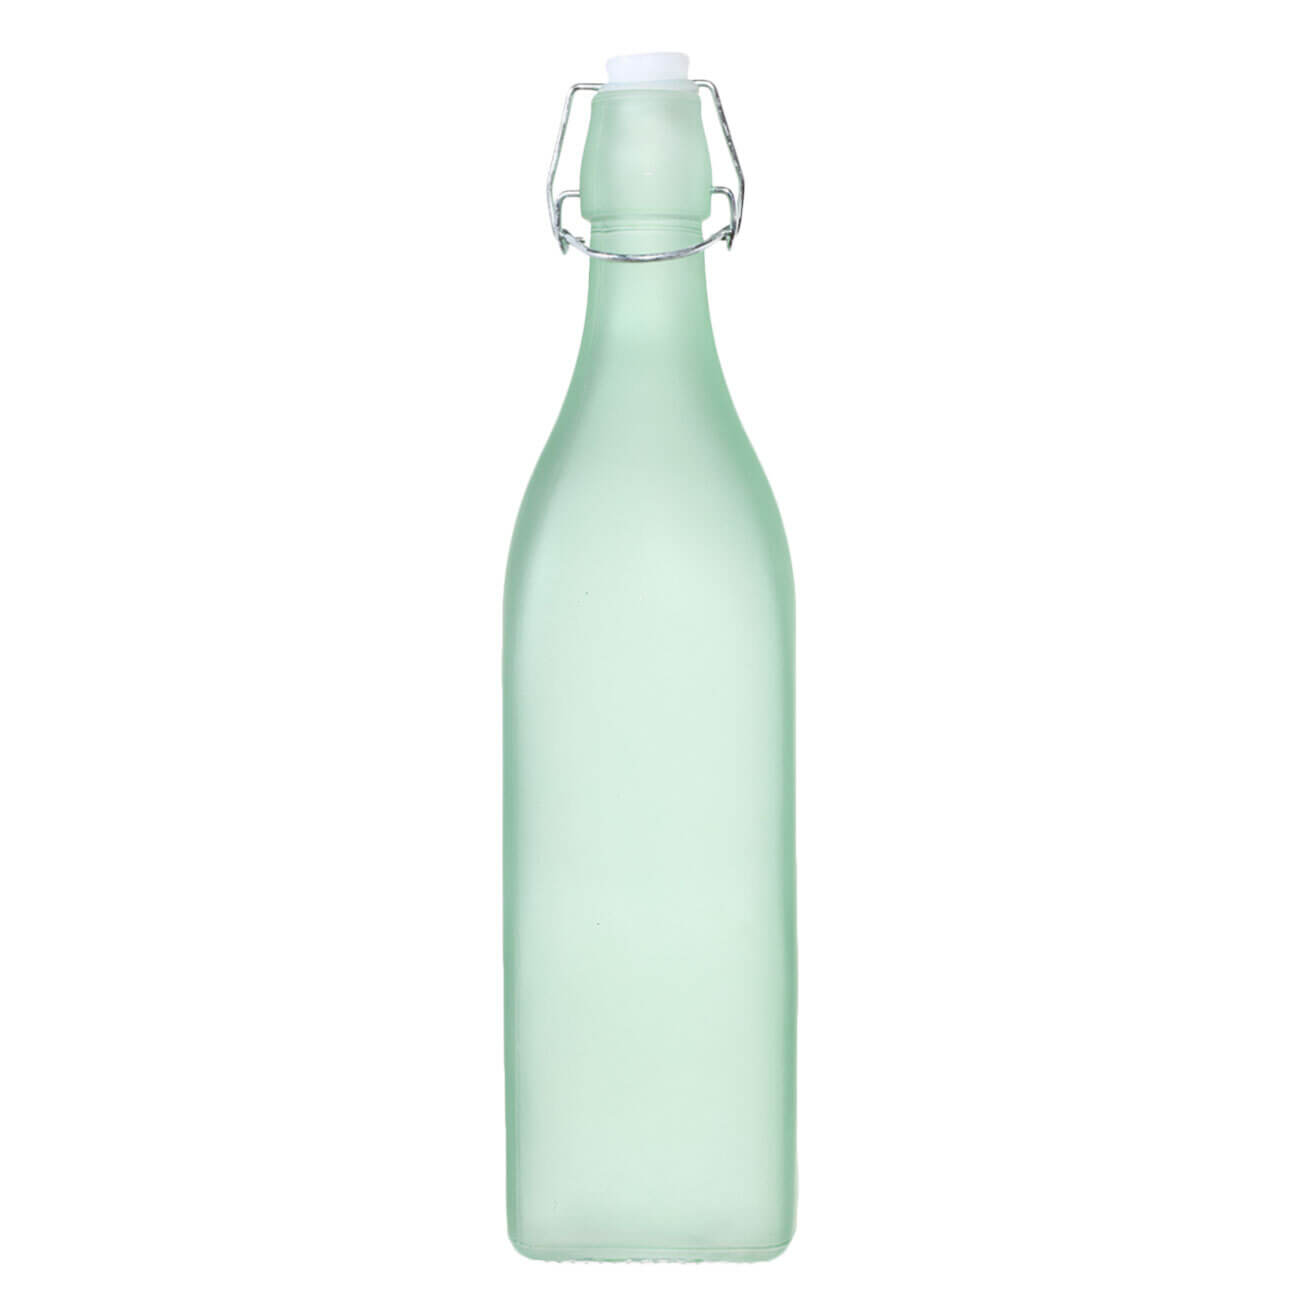 Бутылка для масла или уксуса, 1 л, с клипсой, стекло/металл, зеленая, Light kitchen бутылка для масла уксуса mallony 280мл стеклянная с дозатором 103805